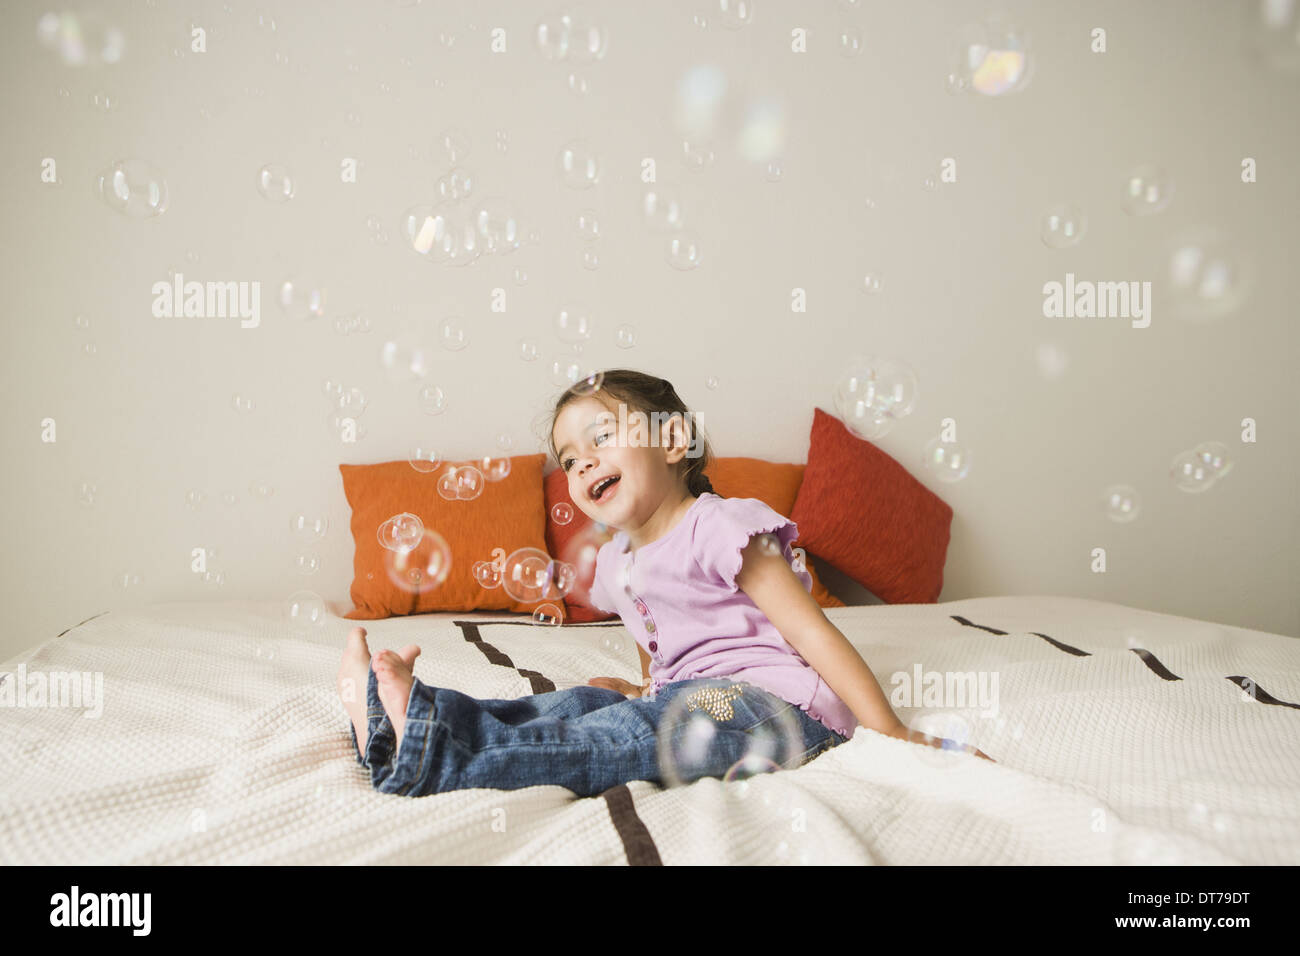 Una giovane ragazza con occhi marroni e capelli scuri in mazzi seduta su di un letto di ridere. Bolle galleggianti in aria. Foto Stock